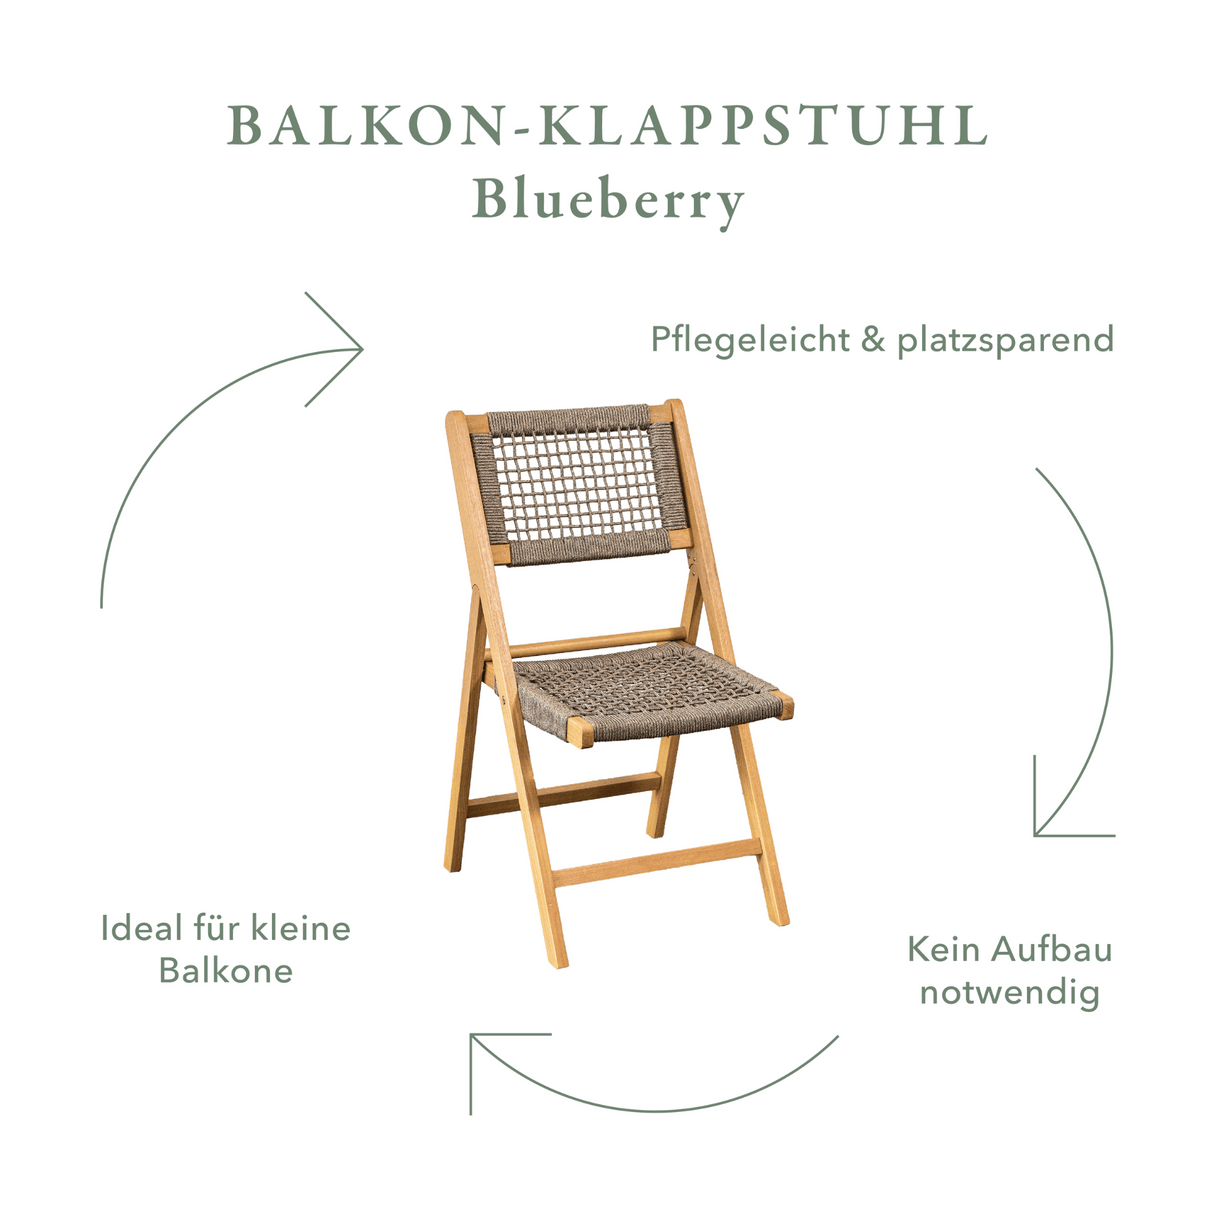 Balkon-Klappstuhl Set Blueberry, 2 Stück + Beistelltisch Set Clover